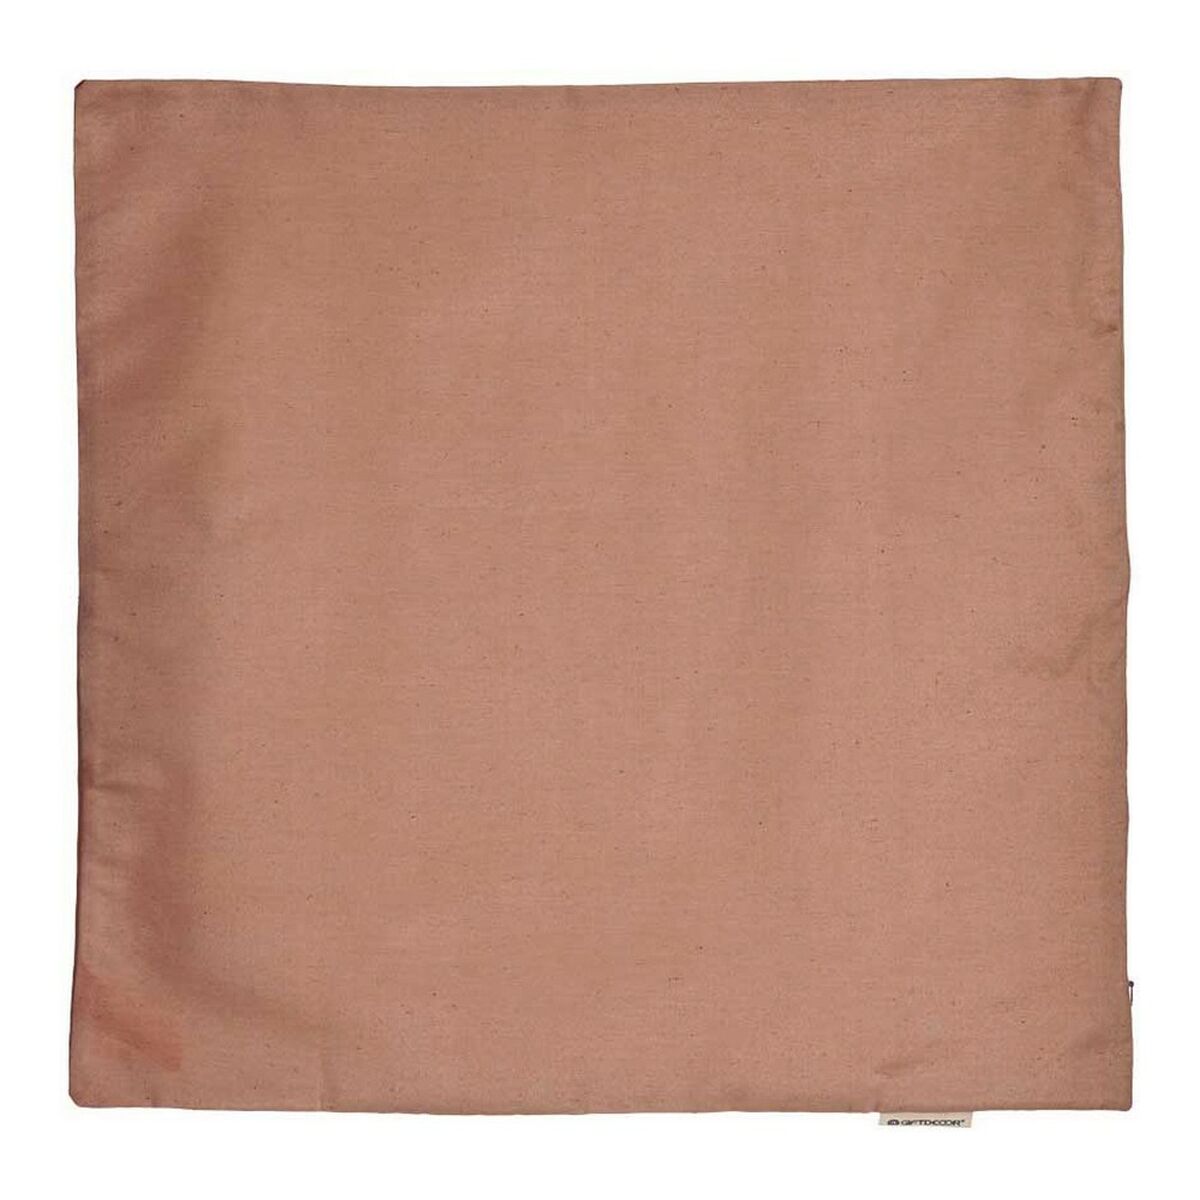 Cushion cover Brown 45 x 0,5 x 45 cm 60 x 0,5 x 60 cm